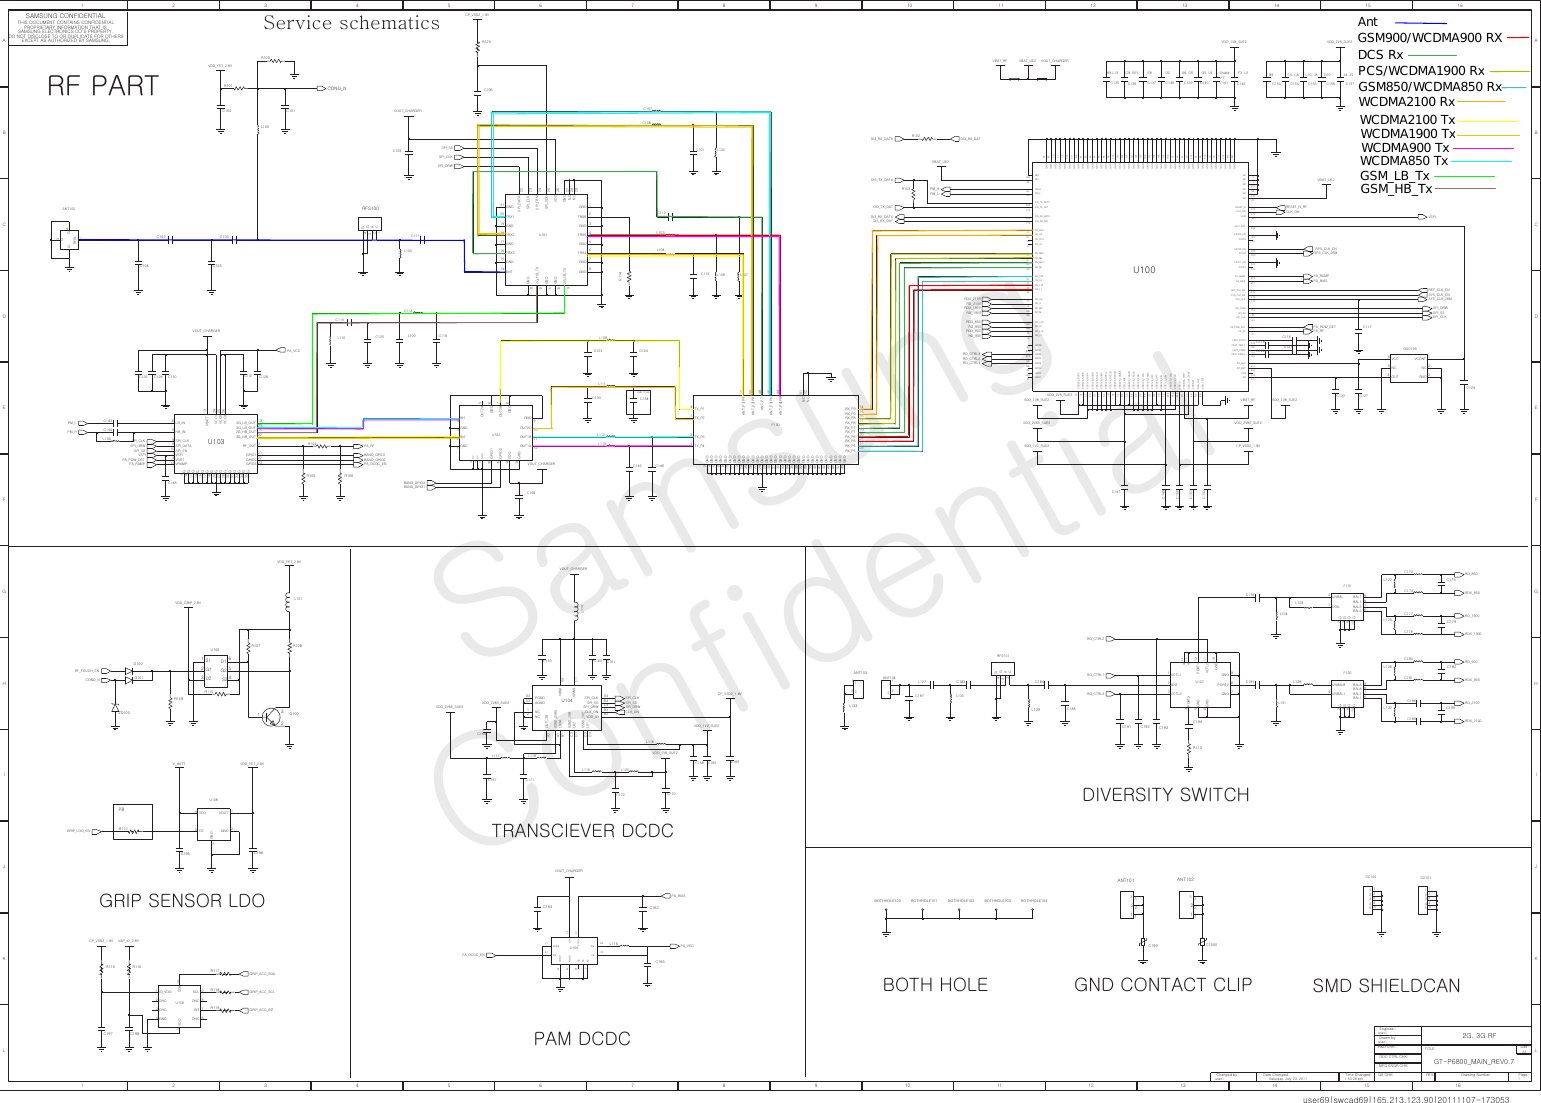 Page 1 of 12 - Samsung GT-P6800 - Schematics. Www.s-manuals.com. Service Schematics